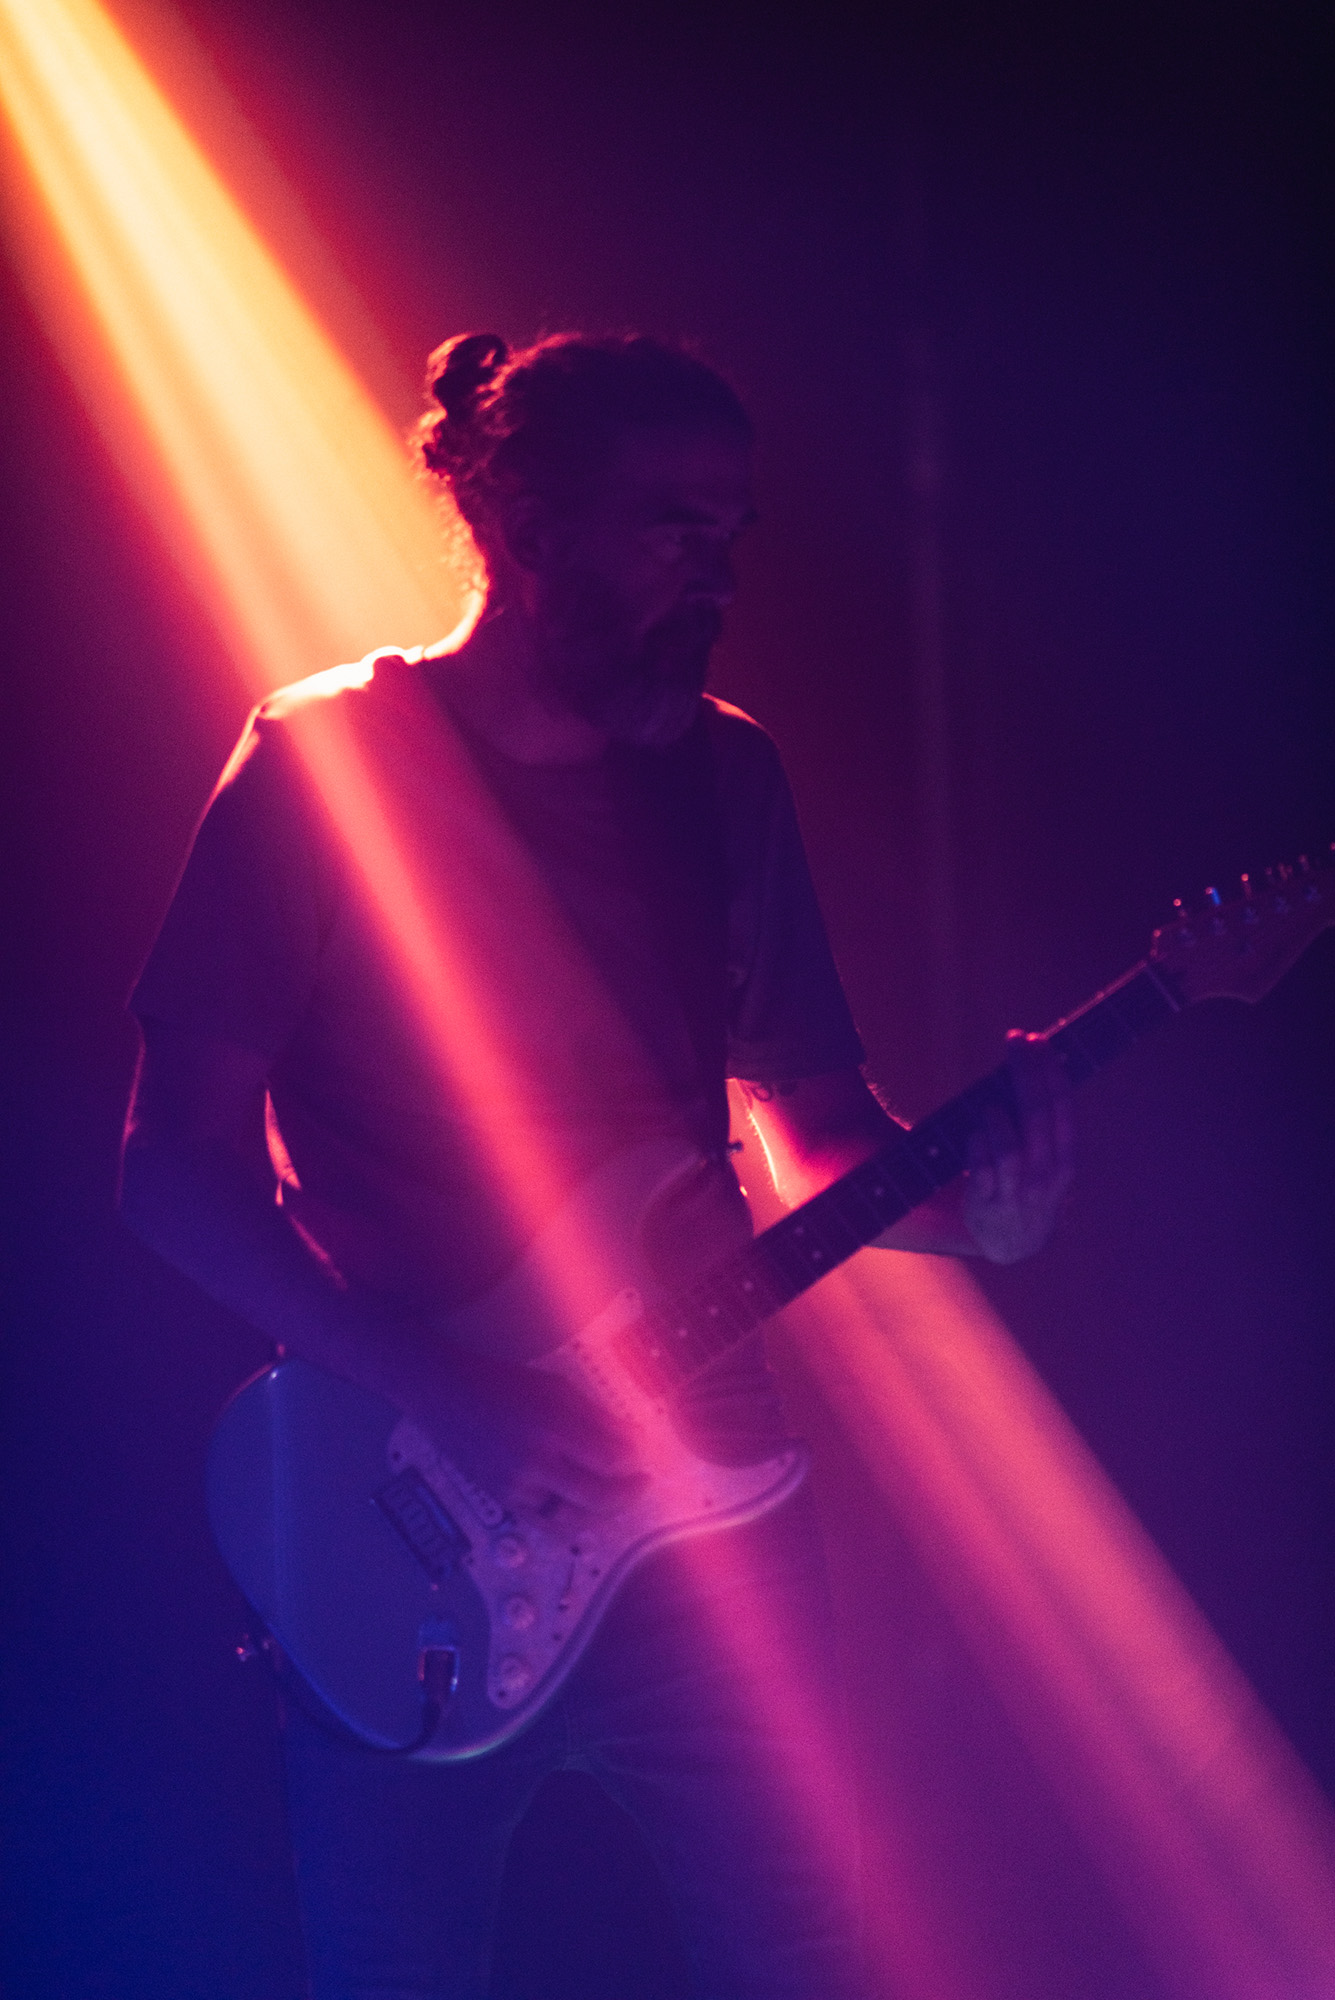 Guitarrista tocando a oscuras con un foco de luz cálida sobre él